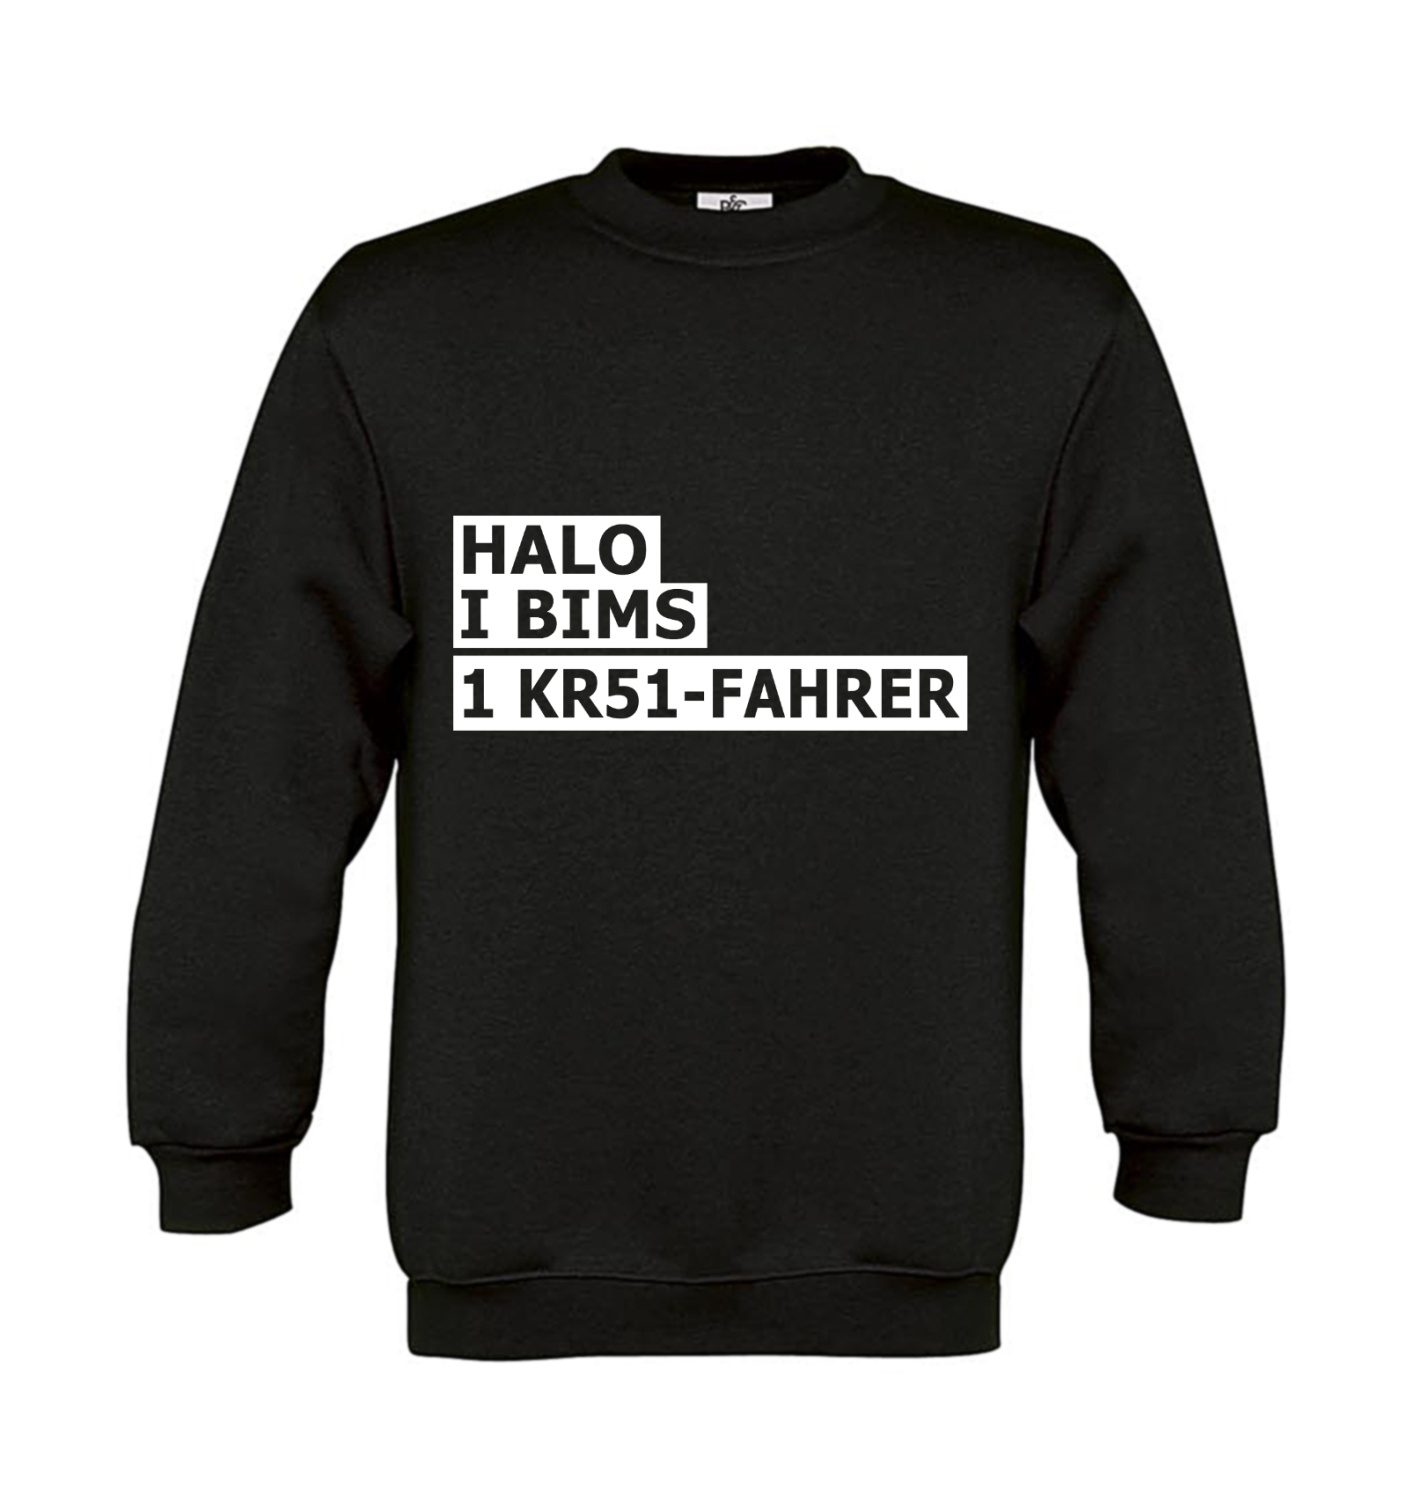 Sweatshirt Kinder 2Takter - Halo I bims 1 KR51-Fahrer